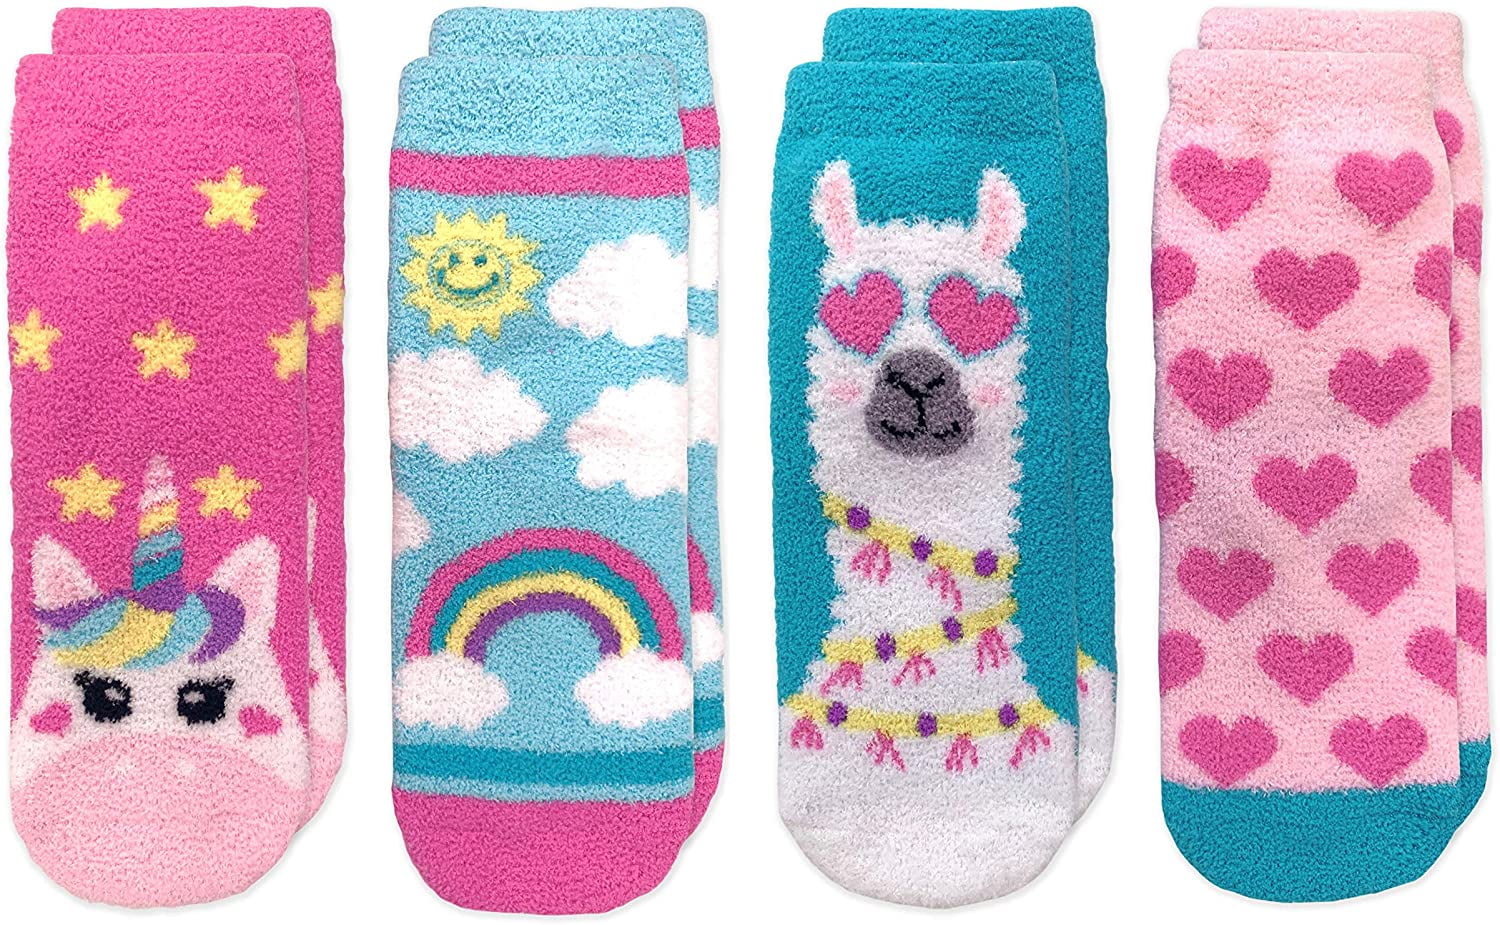 New Disney Frozen Girls Pink Slipper Socks 12-24 Months & Toddler 3-5 Ships Free 